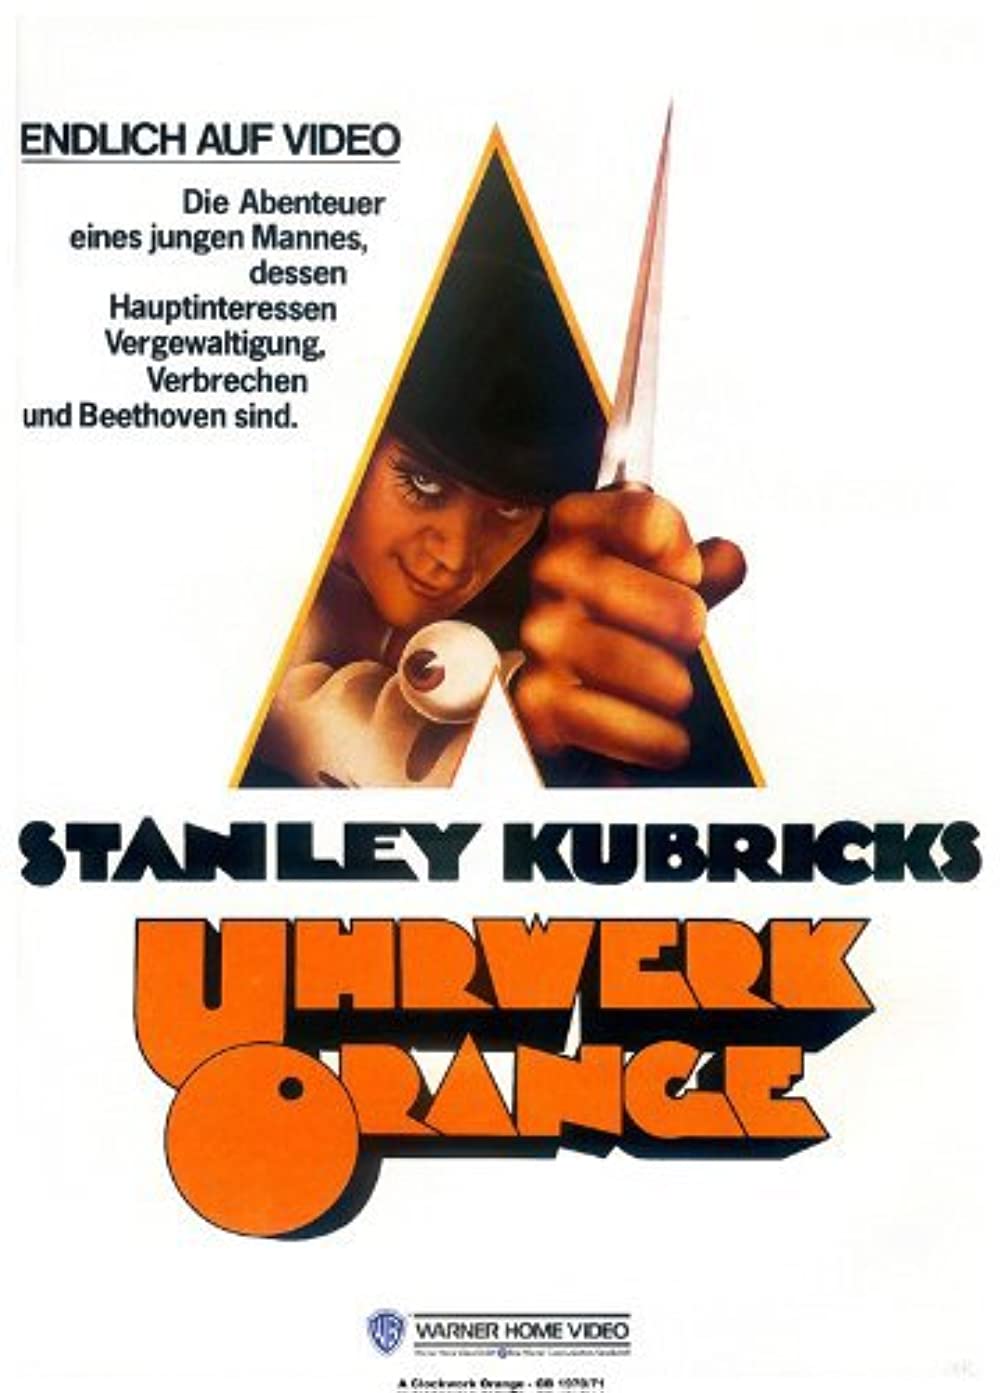 Filmbeschreibung zu A Clockwork Orange (OV)